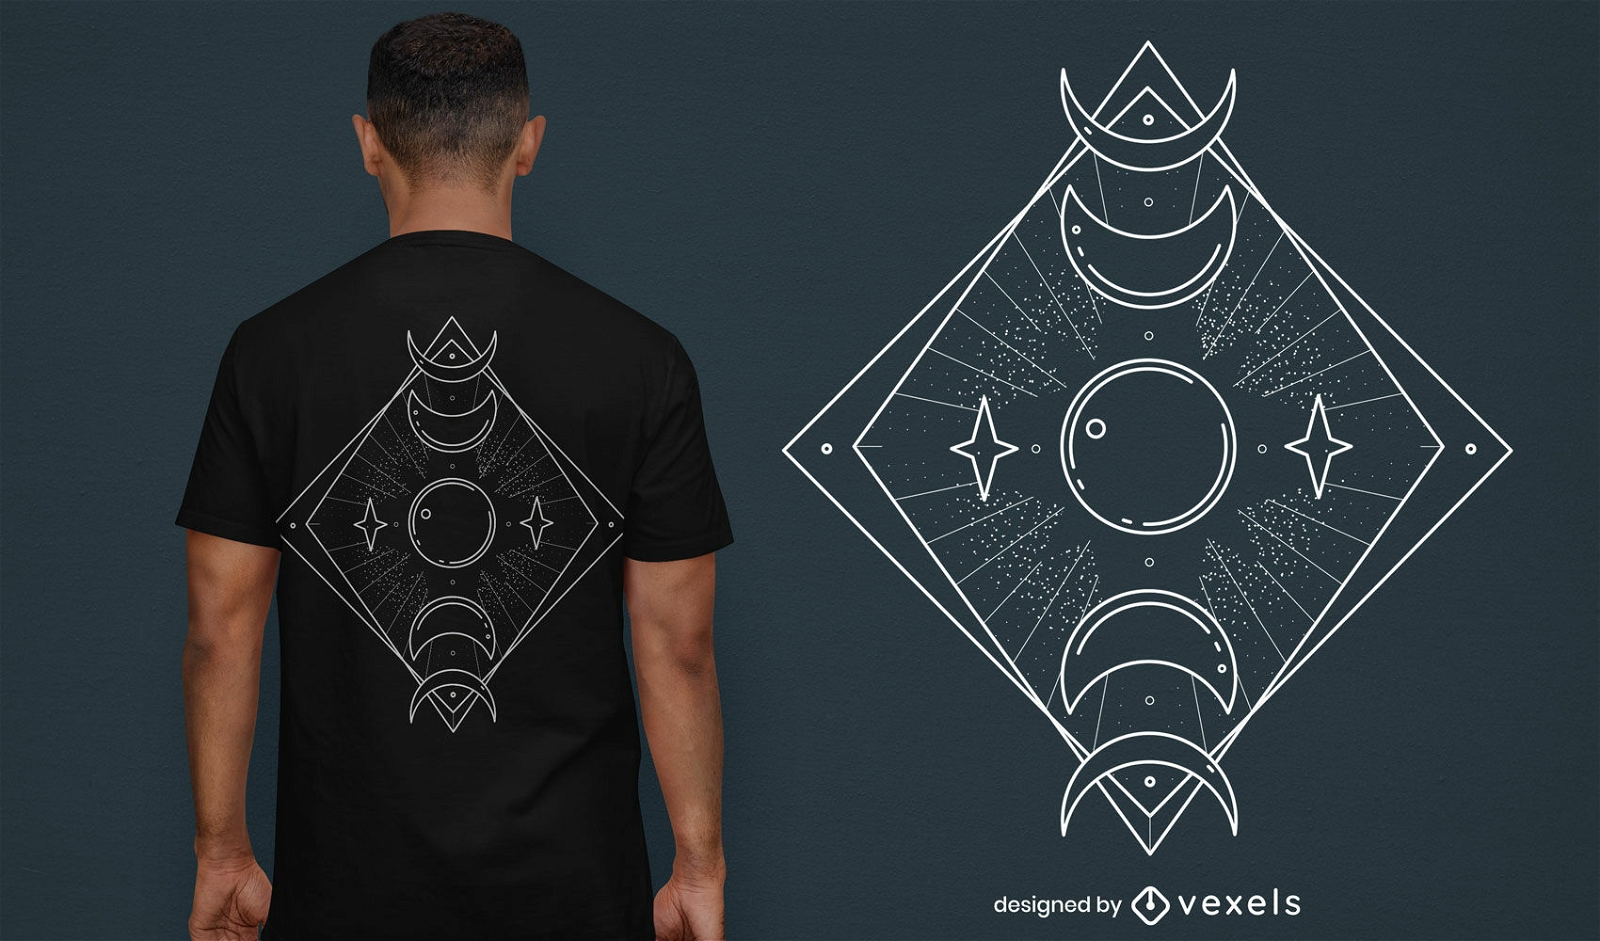 Fases del diseño mágico de la camiseta de la luna.